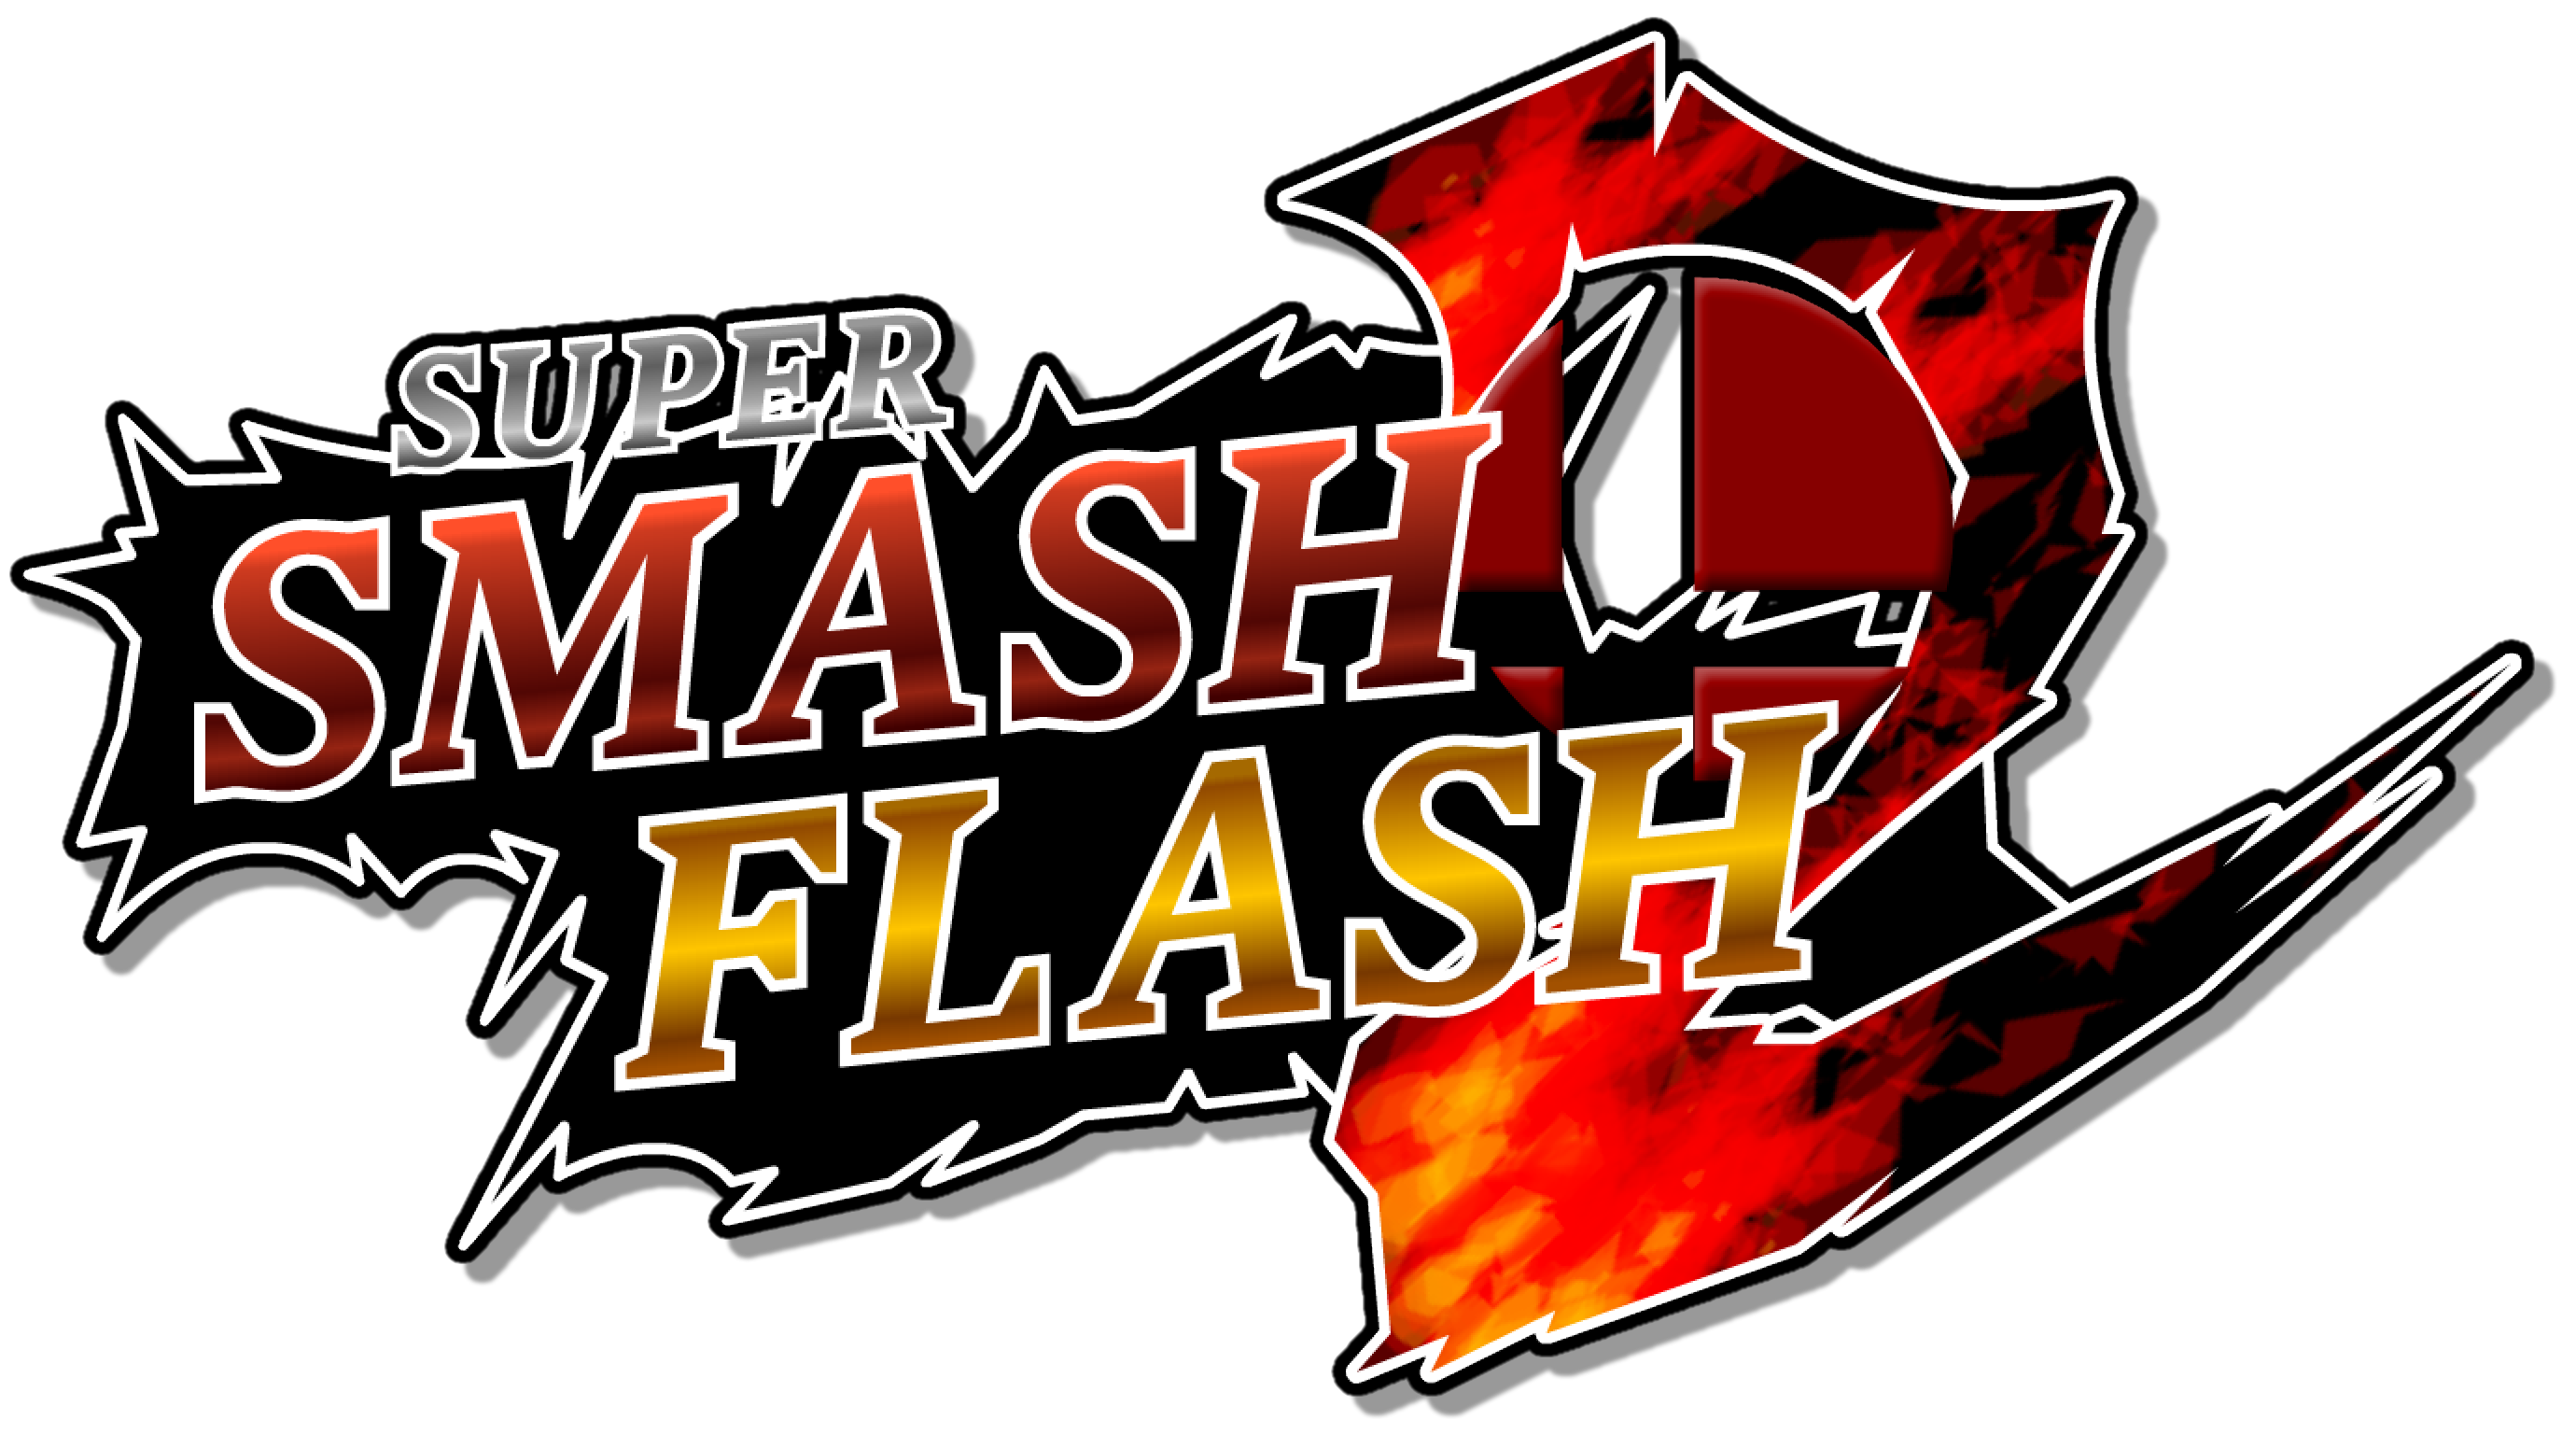 super smash flash 2 beta free download